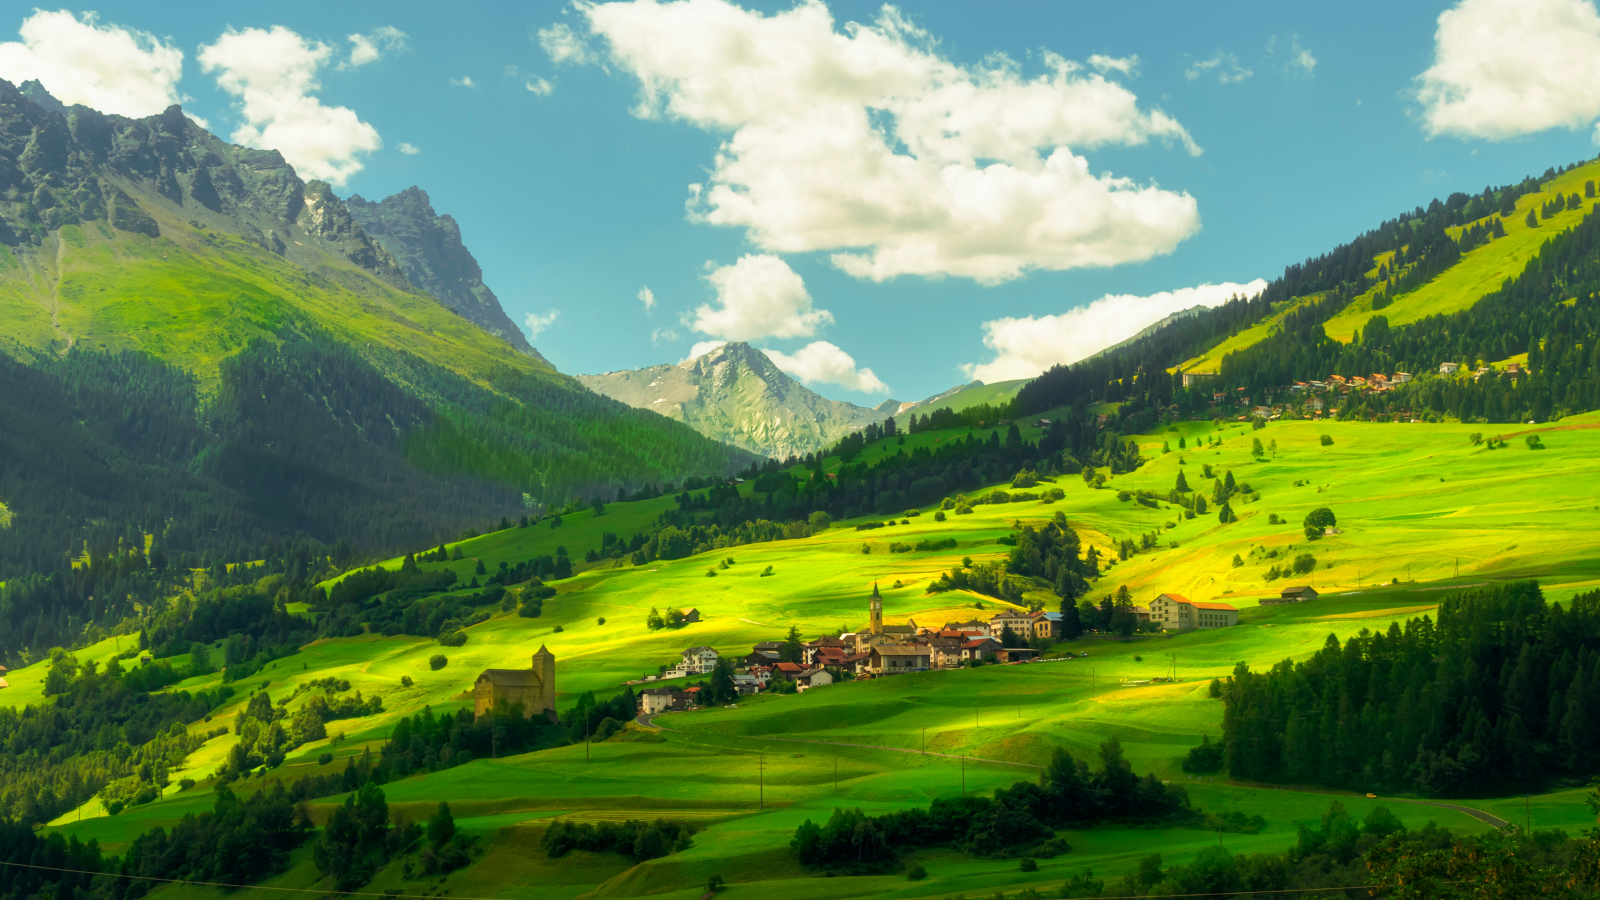 Mountain range and remote village in Switzerland